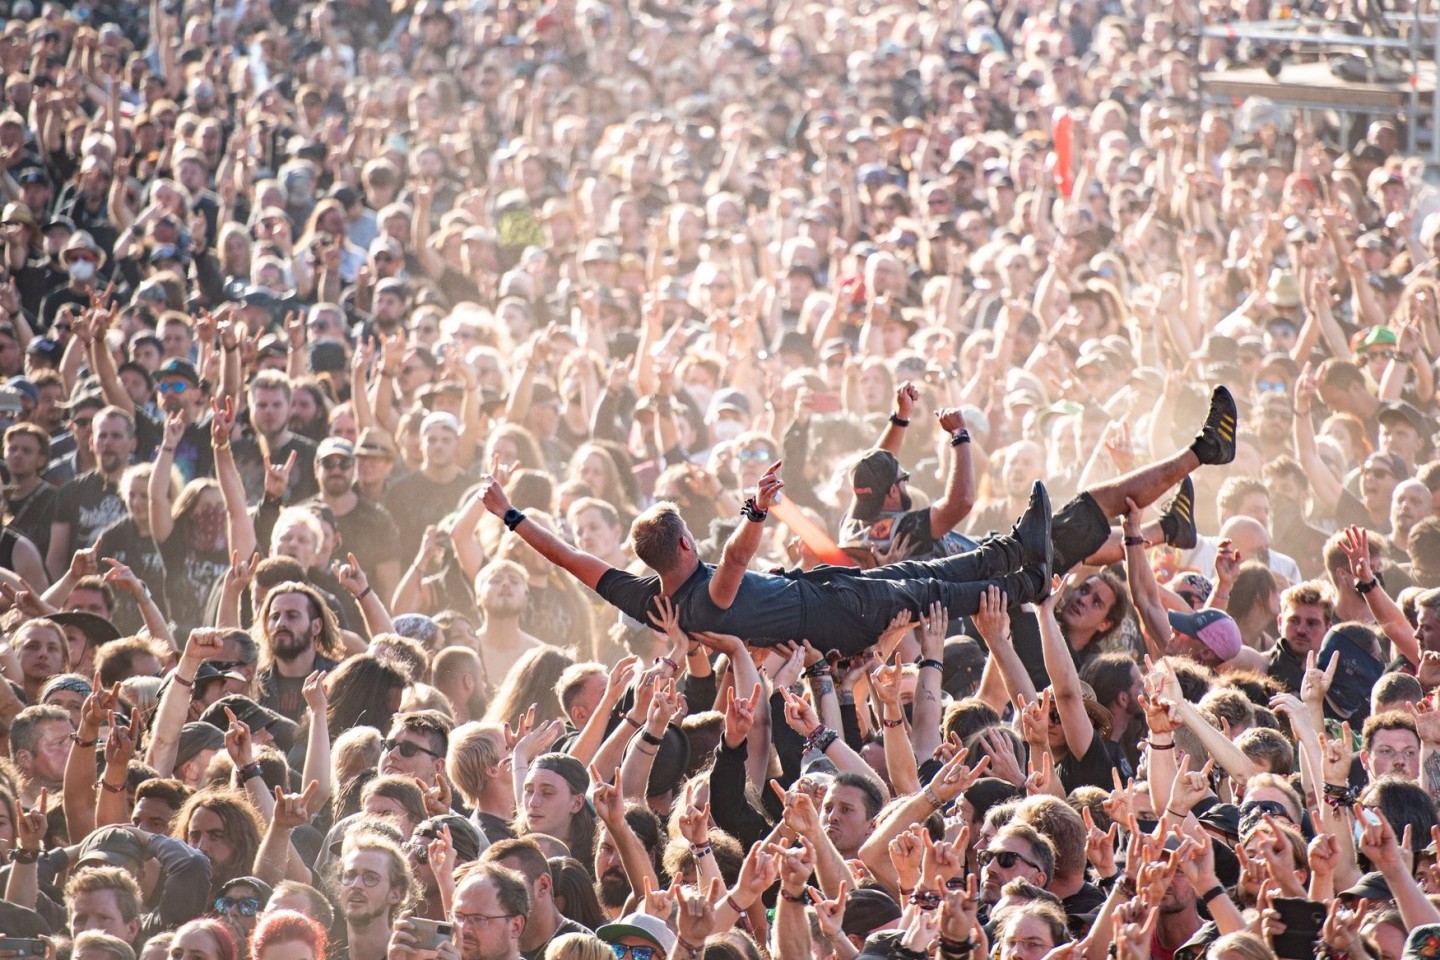 Festivalbesucher werden beim Wacken Open Air Festival beim Crowdsurfen über die Menge getragen. Das WOA gilt als größtes Heavy-Metal-Festival der Welt.